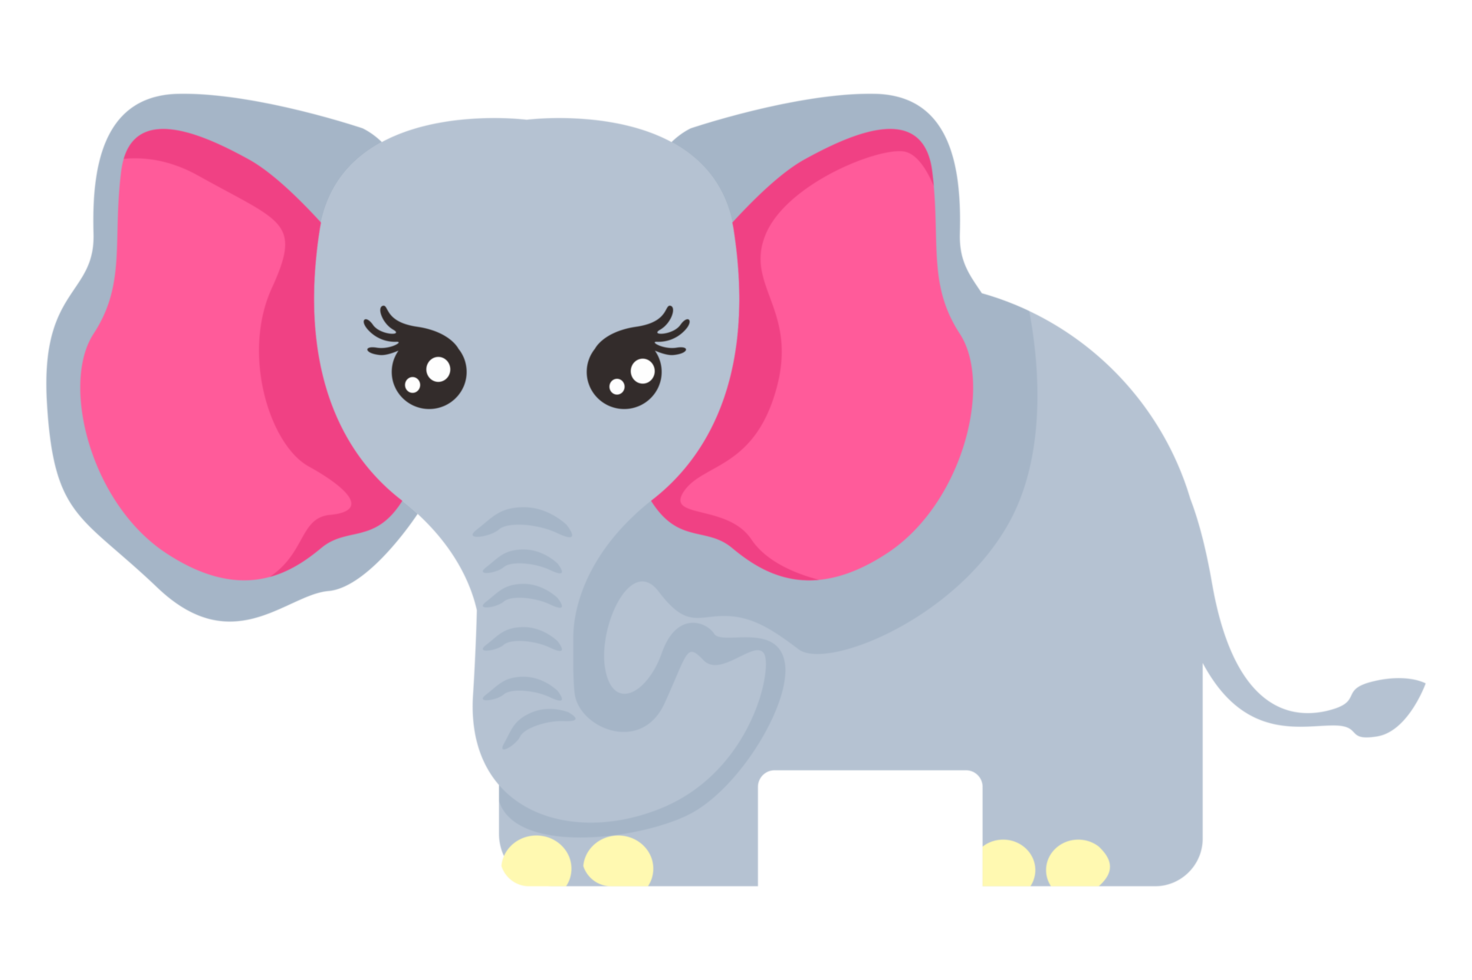 elefante adorable para el diseño png